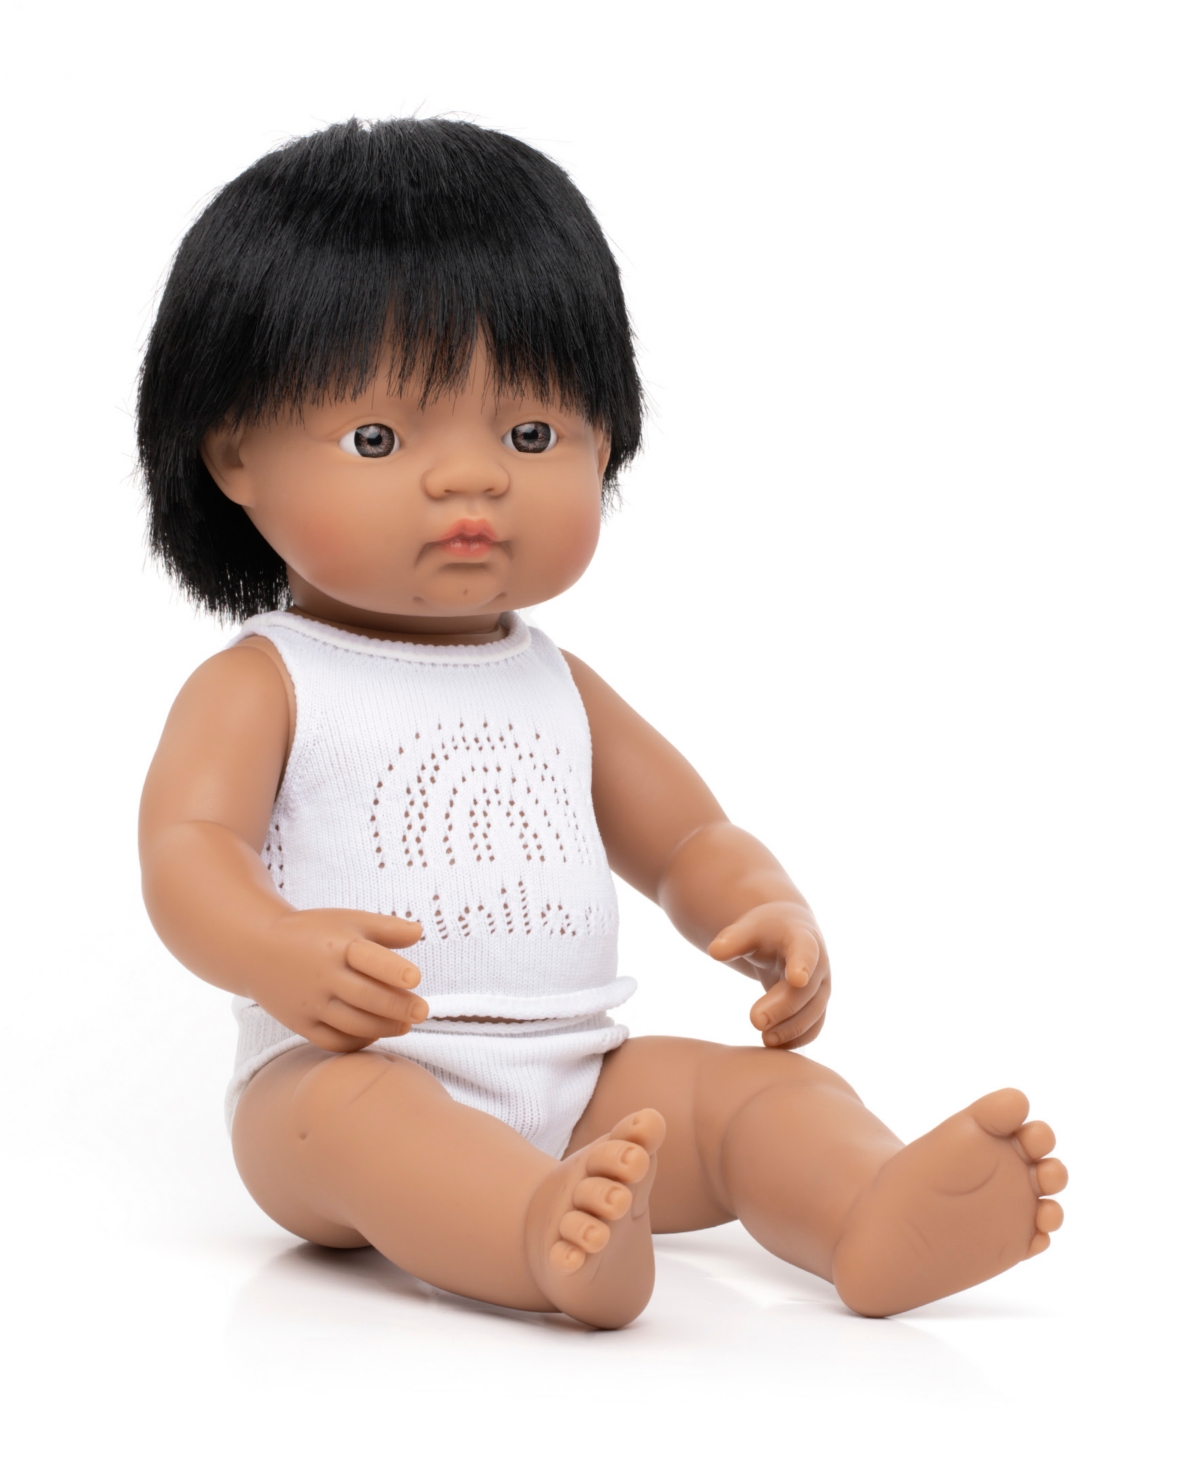 Miniland 15" Baby Doll Hispanic Boy Set, 3 Piece In No Color